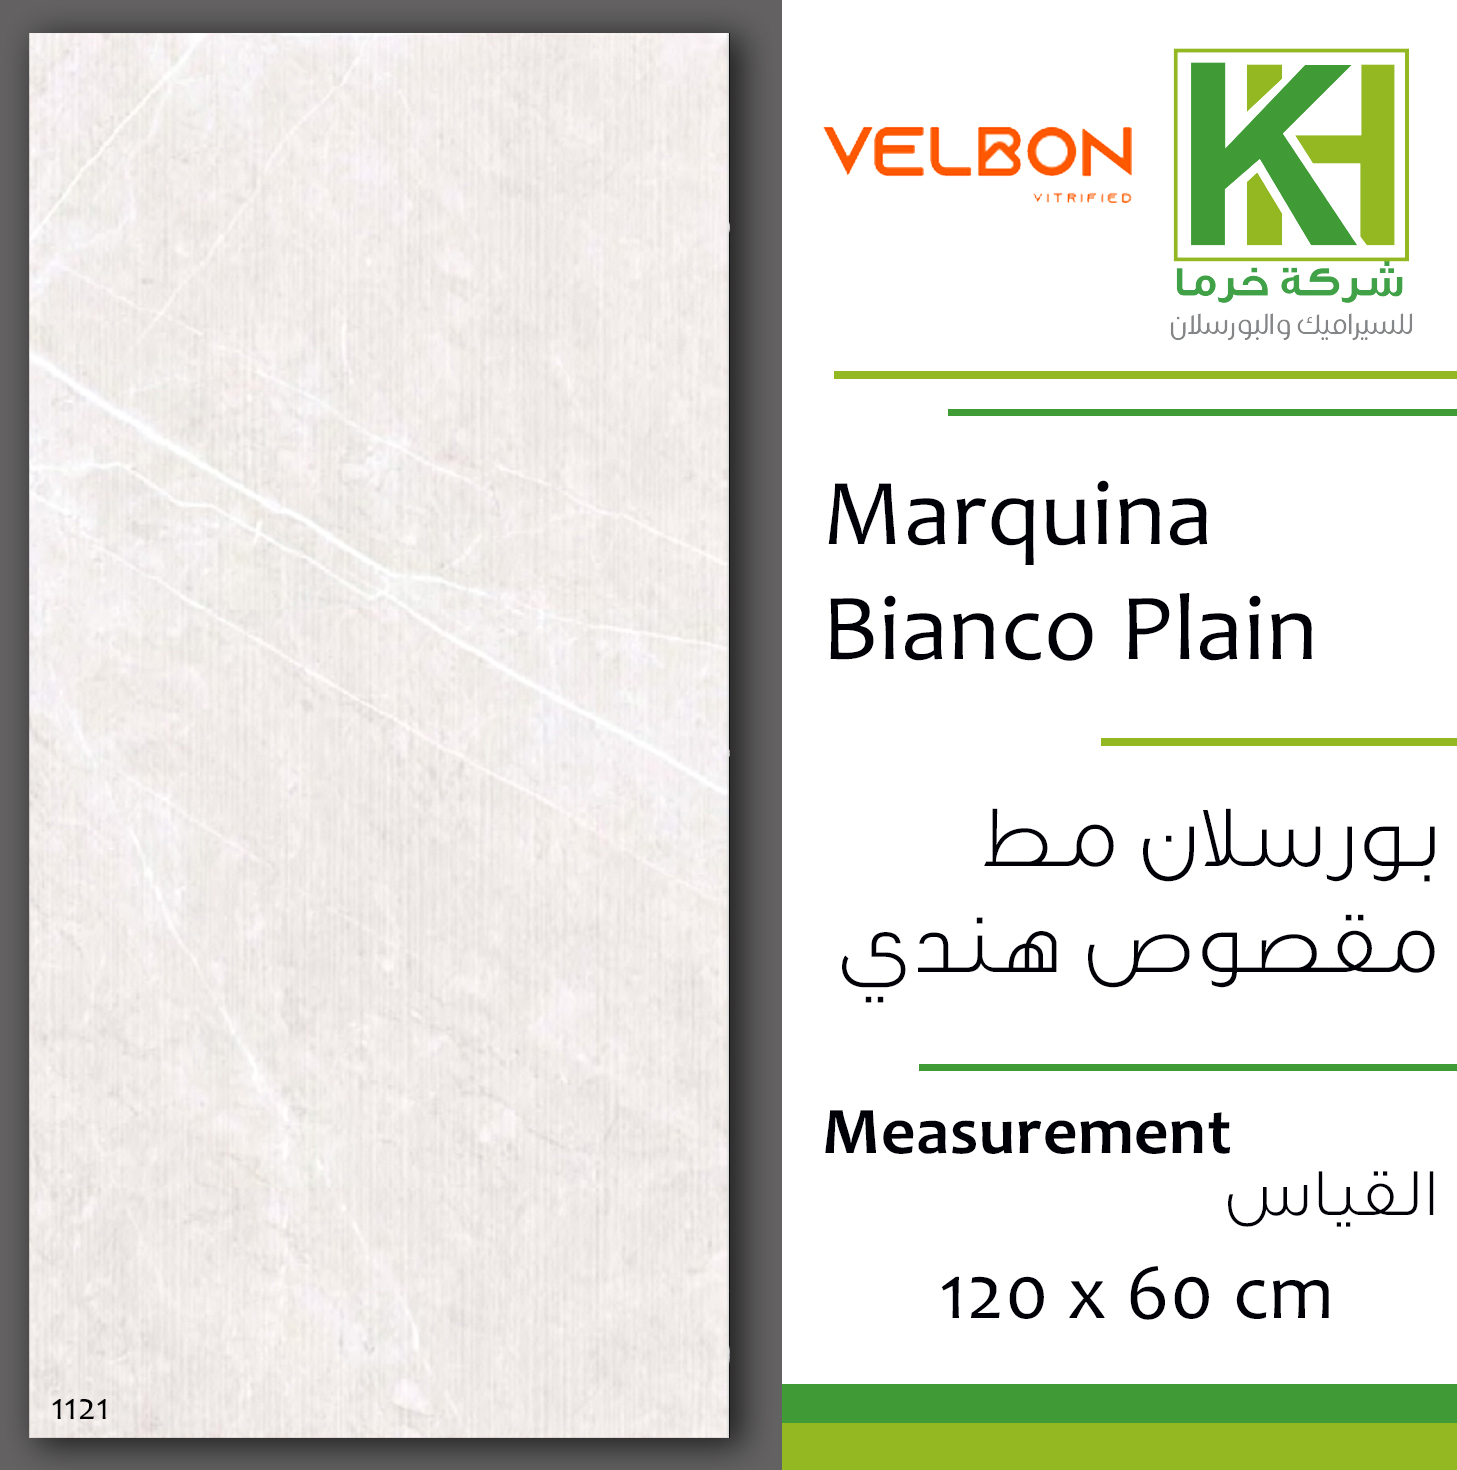 Picture of Indian Matt porcelain tile 60x120 cm Marquina Bianco Plain